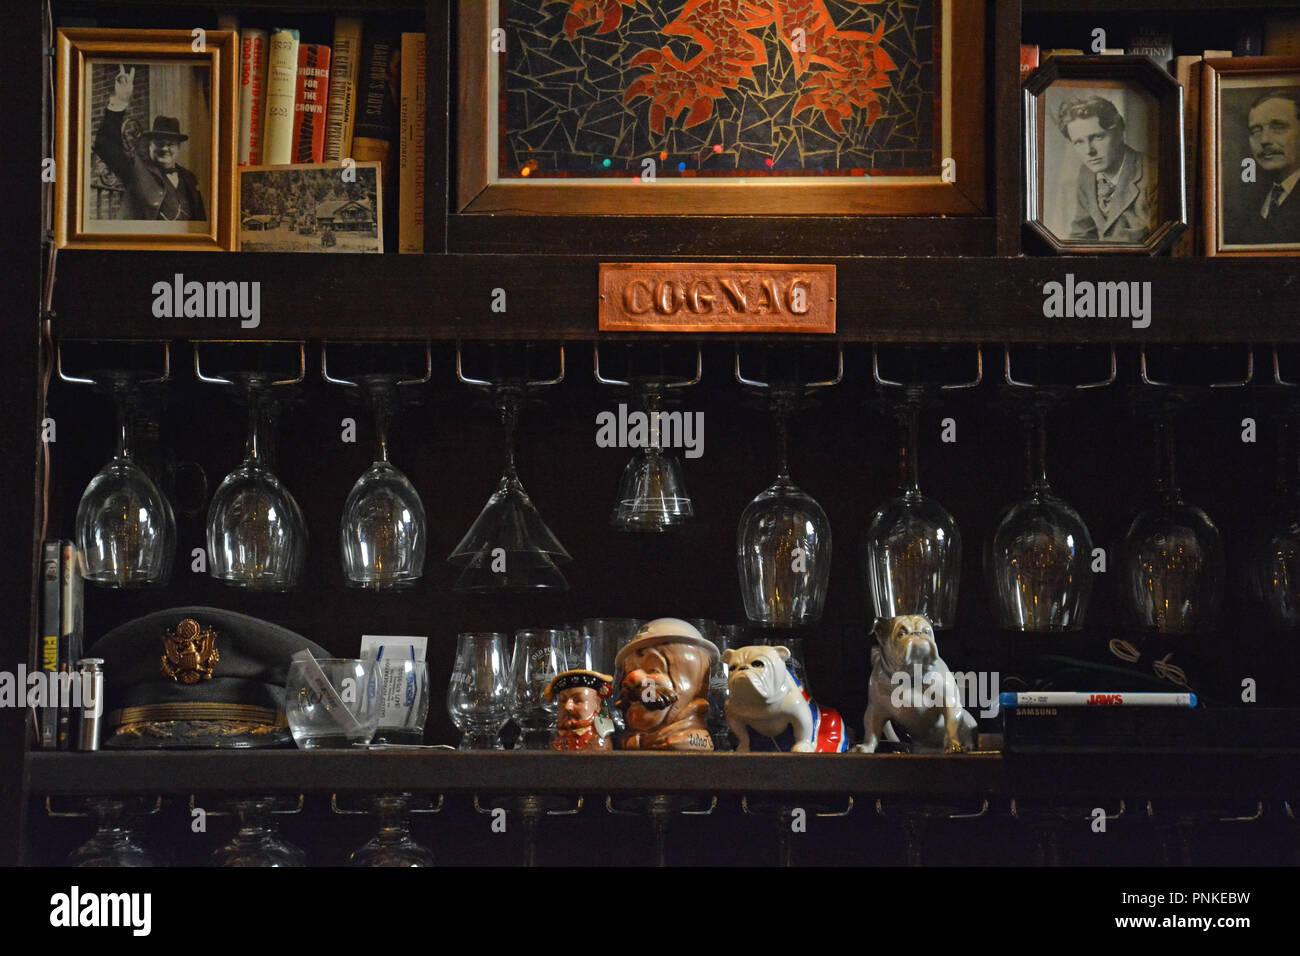 Détail d'un dos de bar étalage avec des photos de la figurine en porcelaine et chachkies à un pub anglais. Banque D'Images